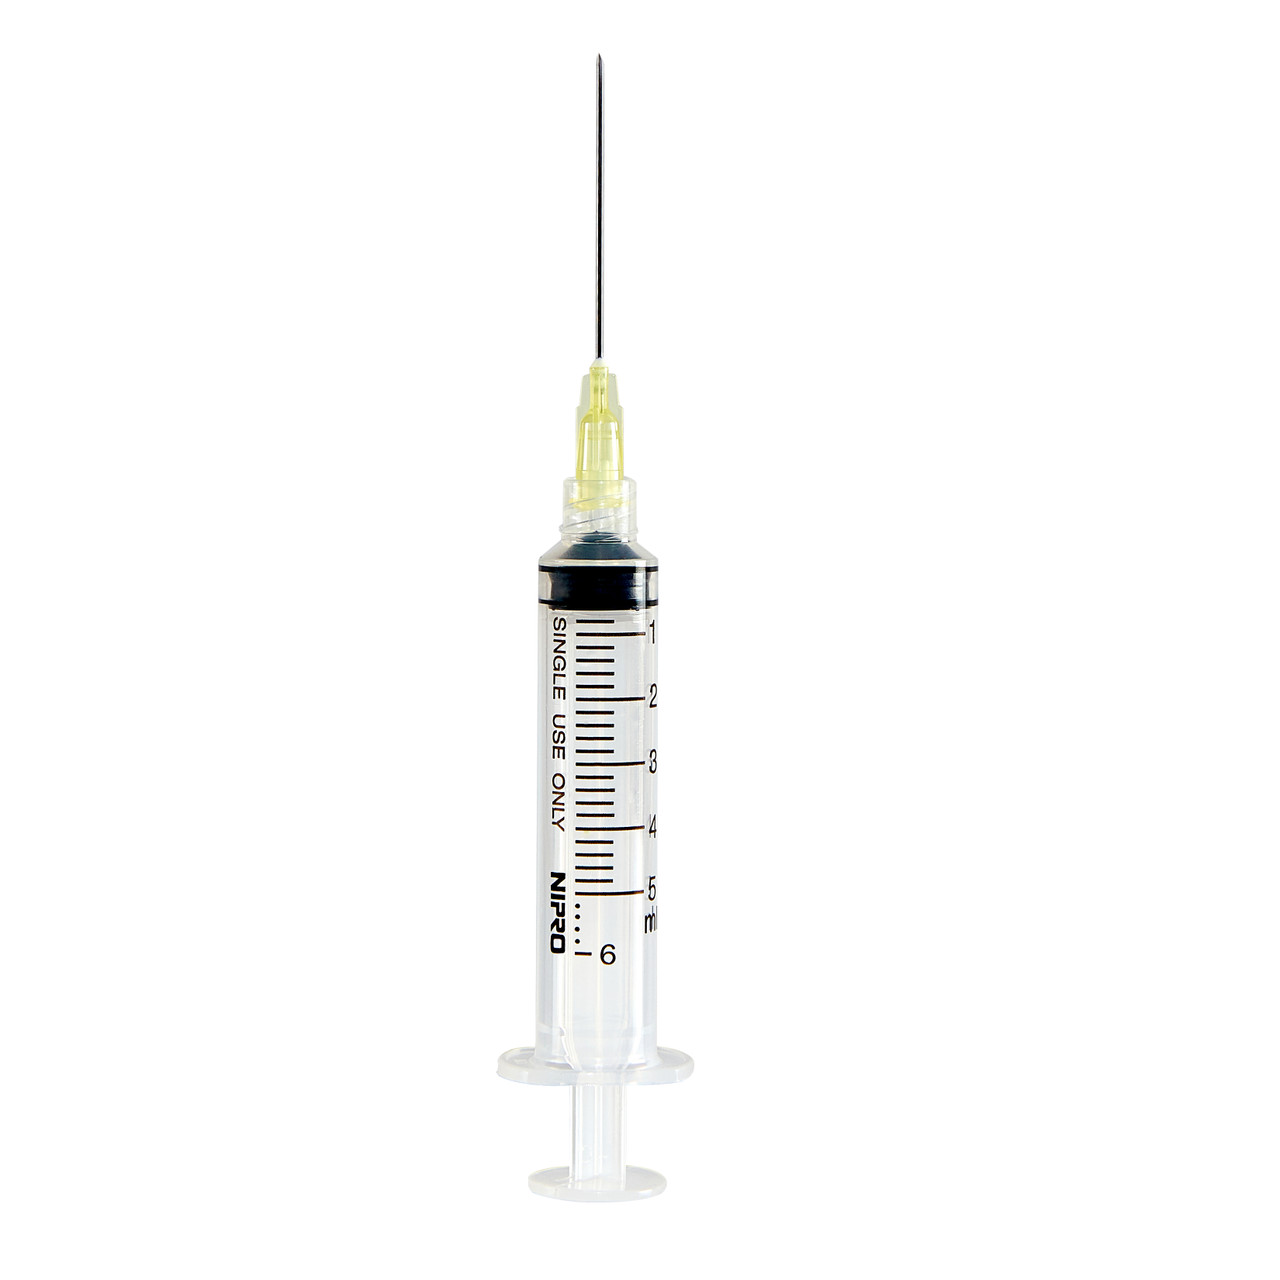 1cc Syringe with 5/8 needle